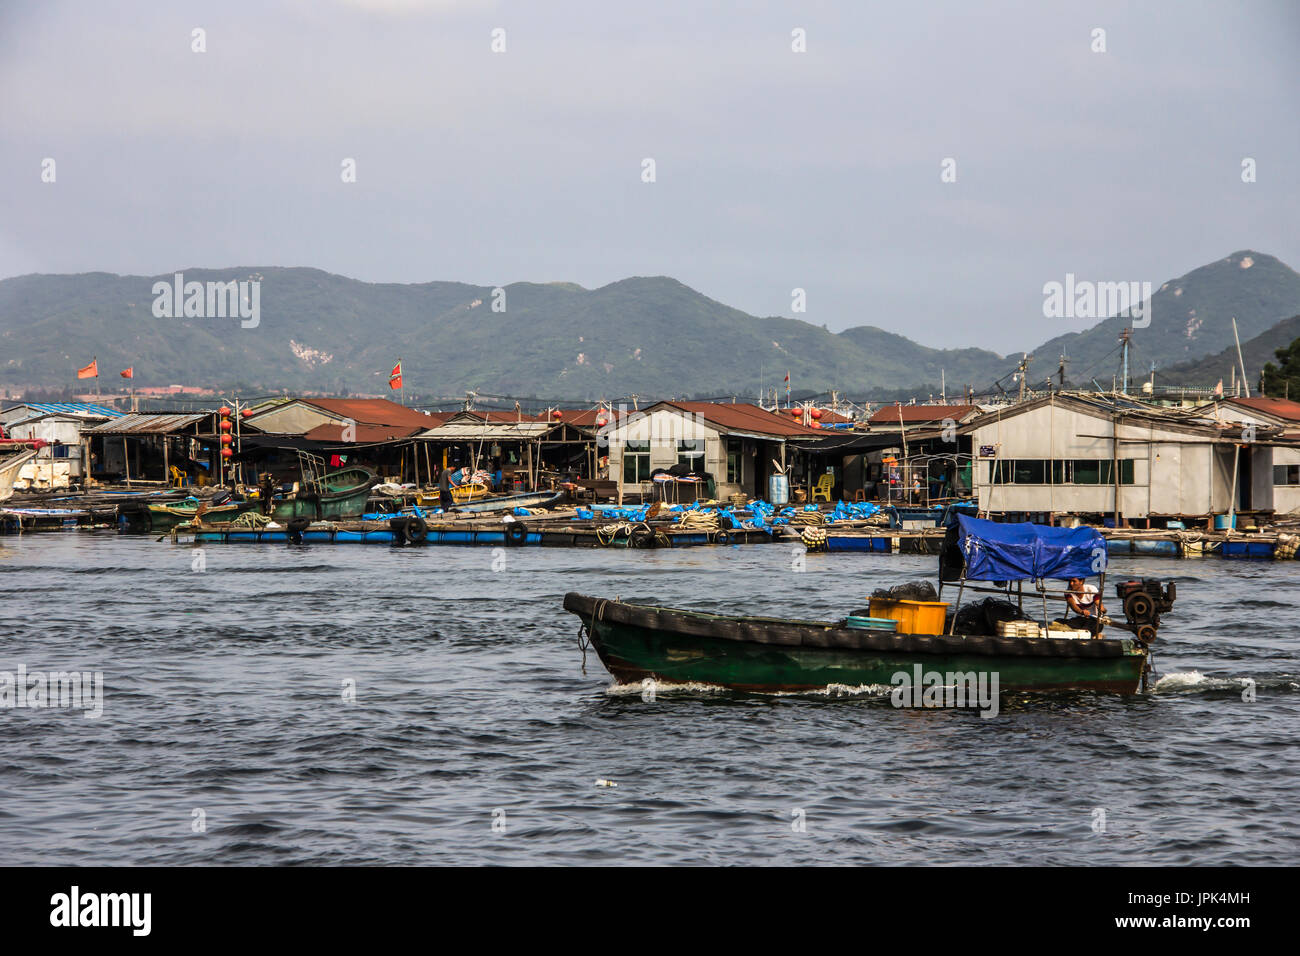 Lingshui, pescatori villaggio galleggiante, Nanwan Monkey Island e transoceanico teleferica come sfondo, Foto Stock